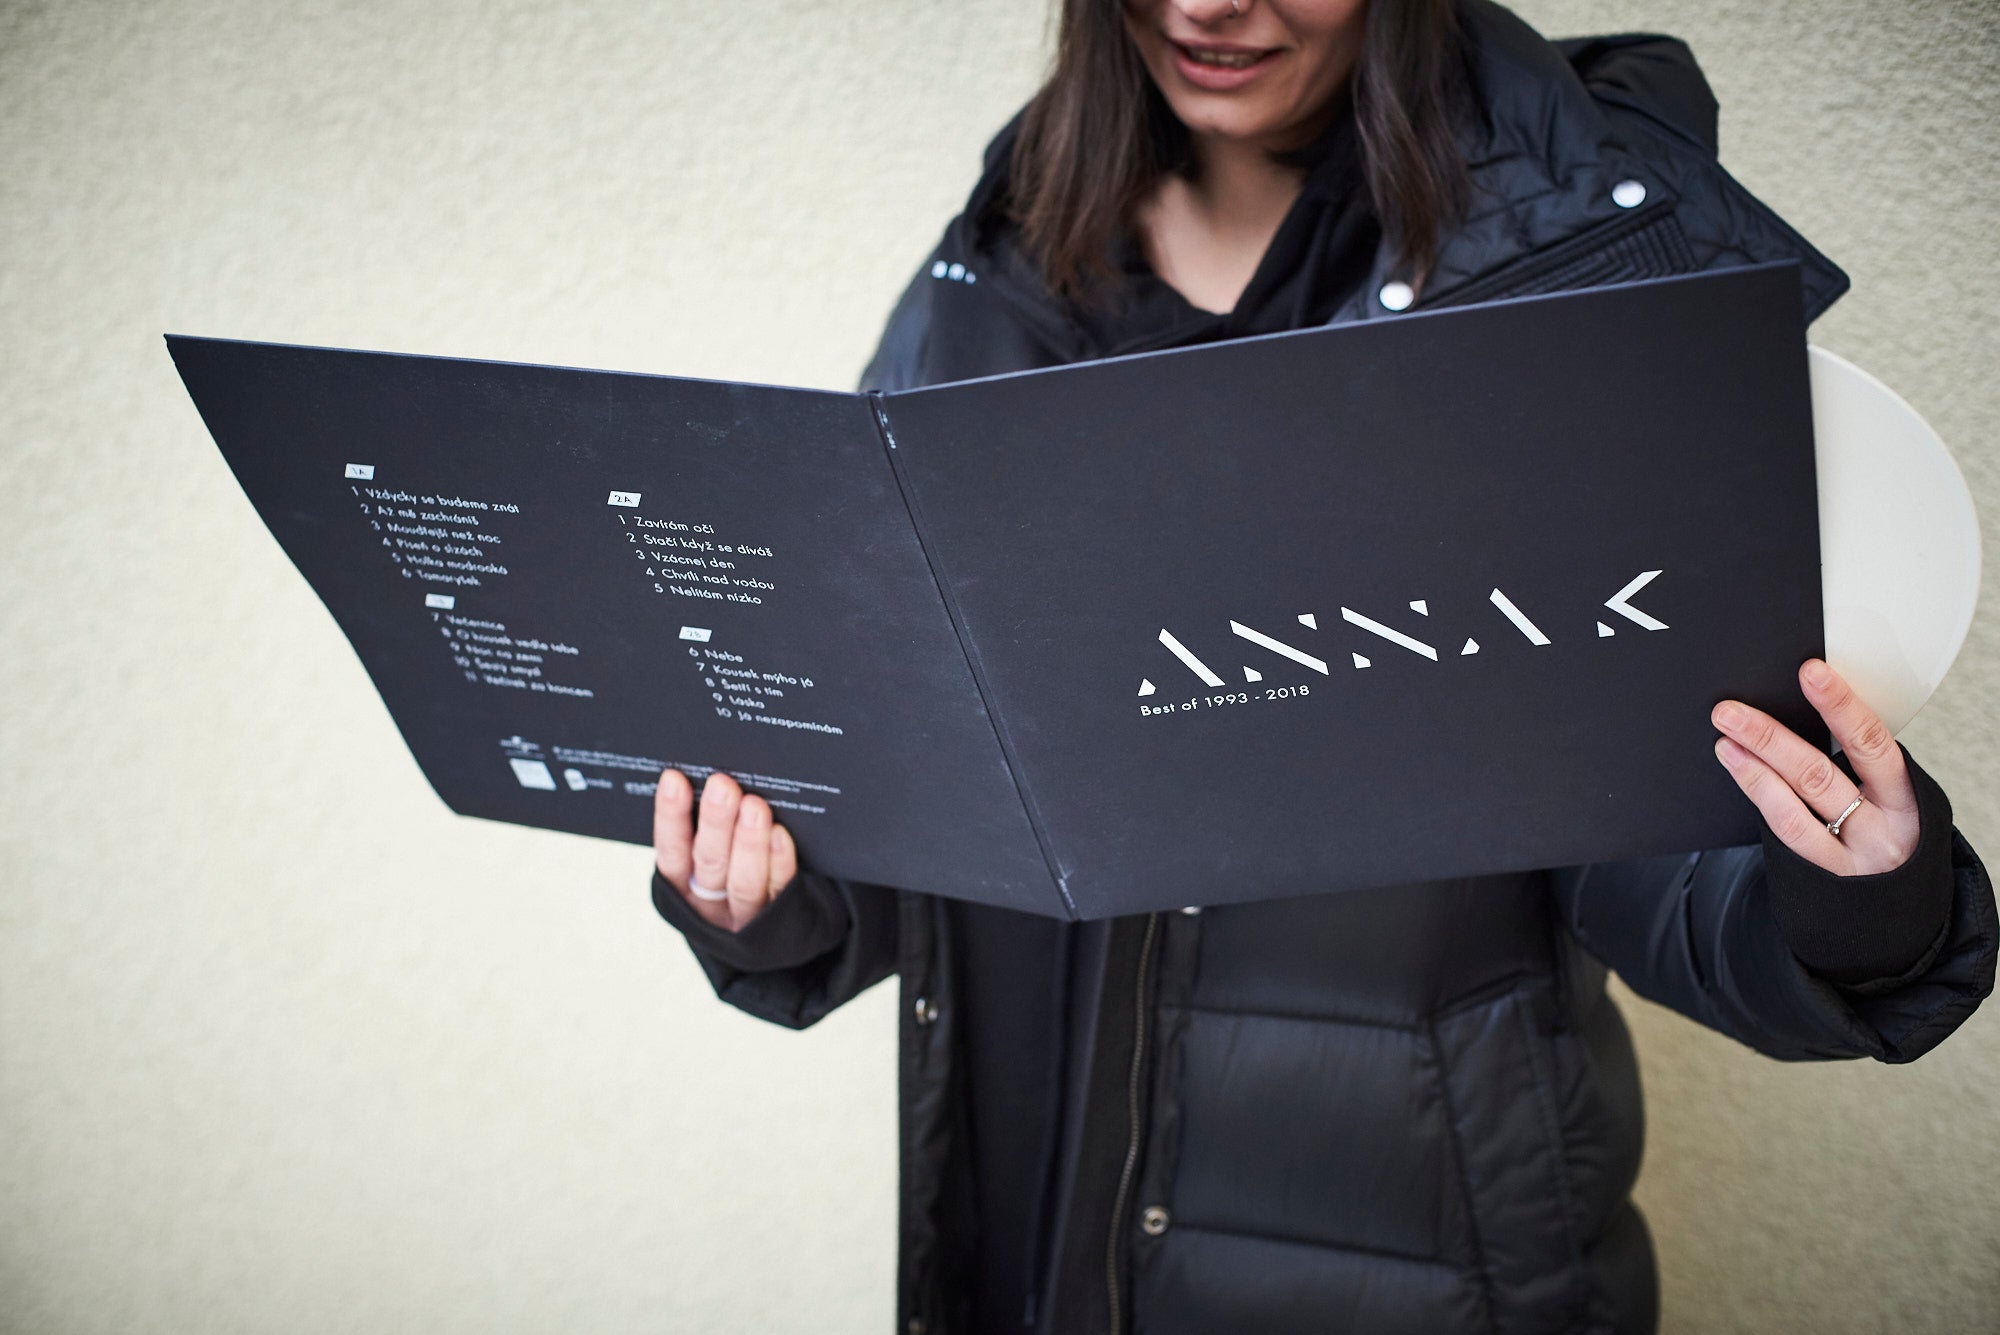 Anna K LP Best of 1993-2018